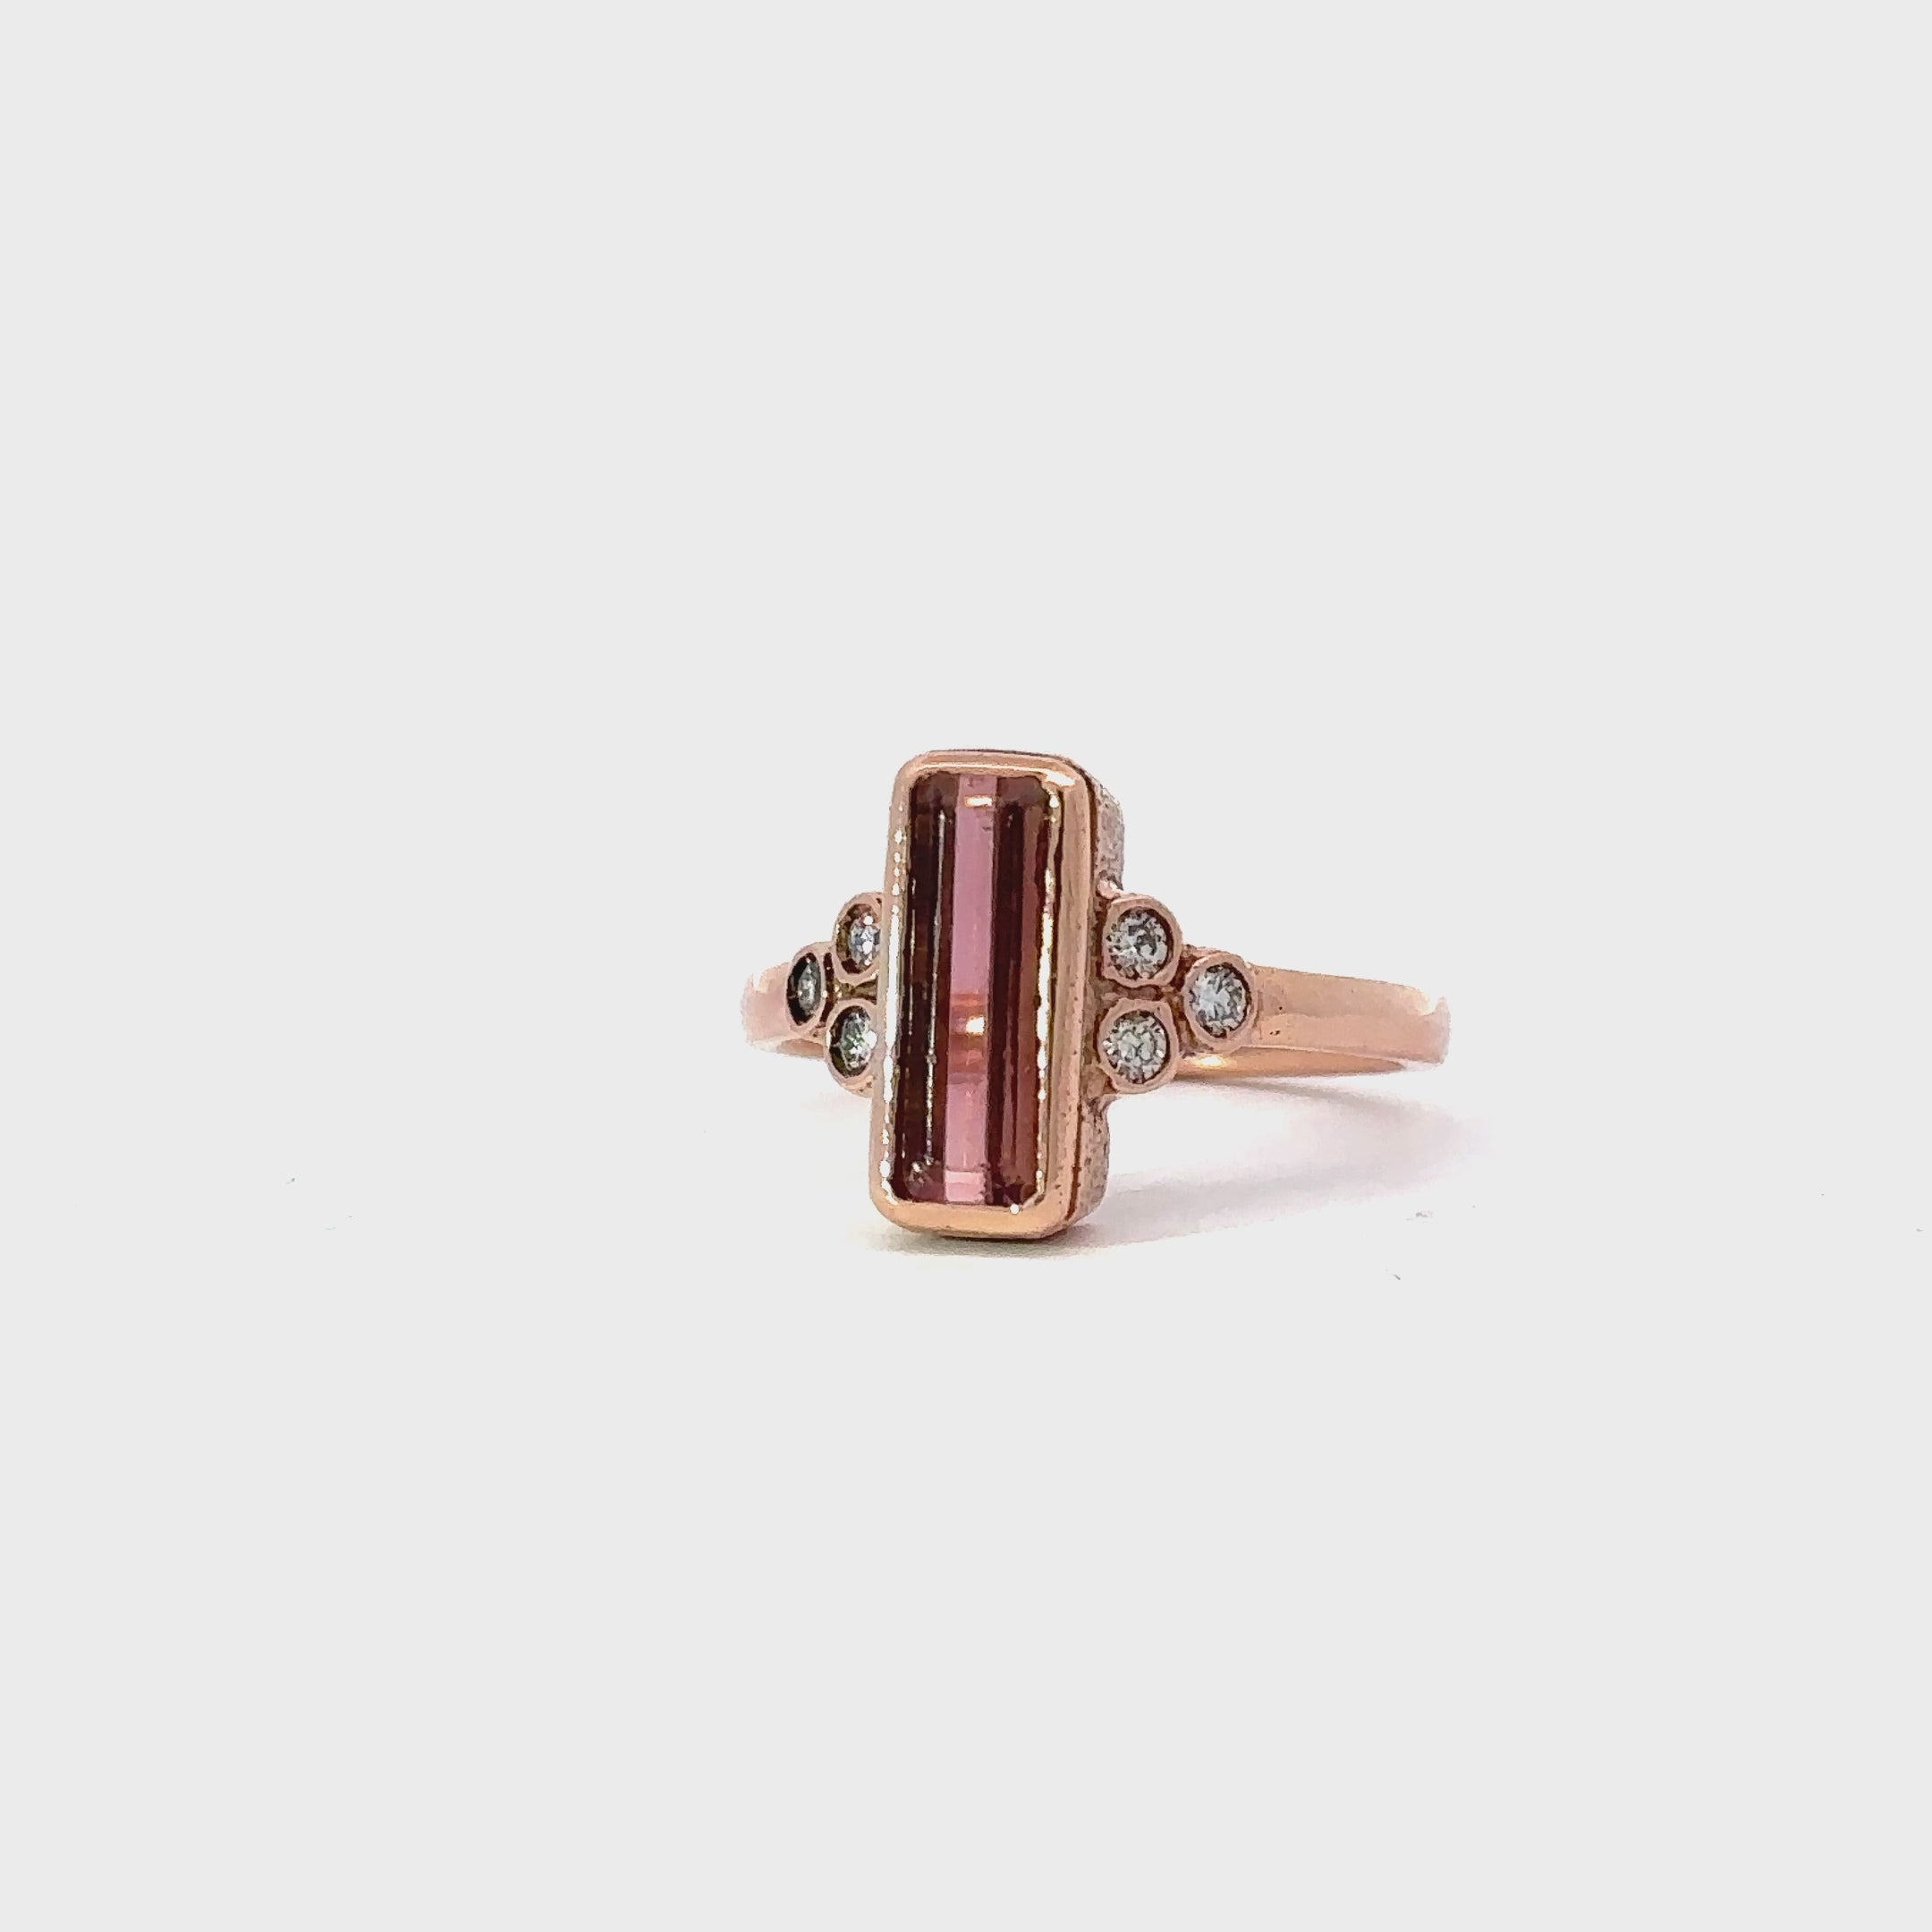 Custom 10k rose gold pink tourmaline ring